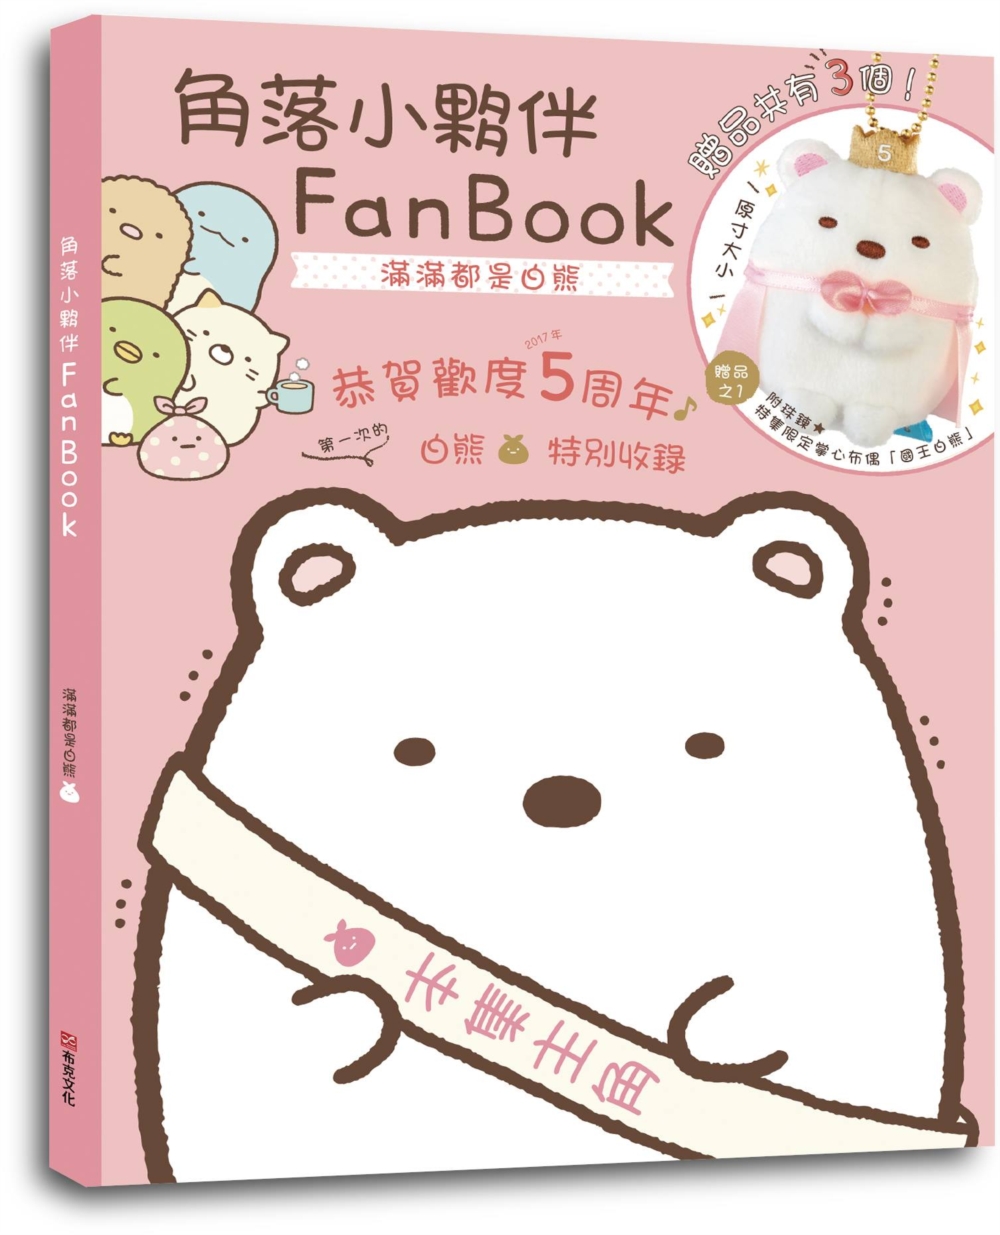 角落小夥伴FanBook：滿滿都是白熊(角落生物)